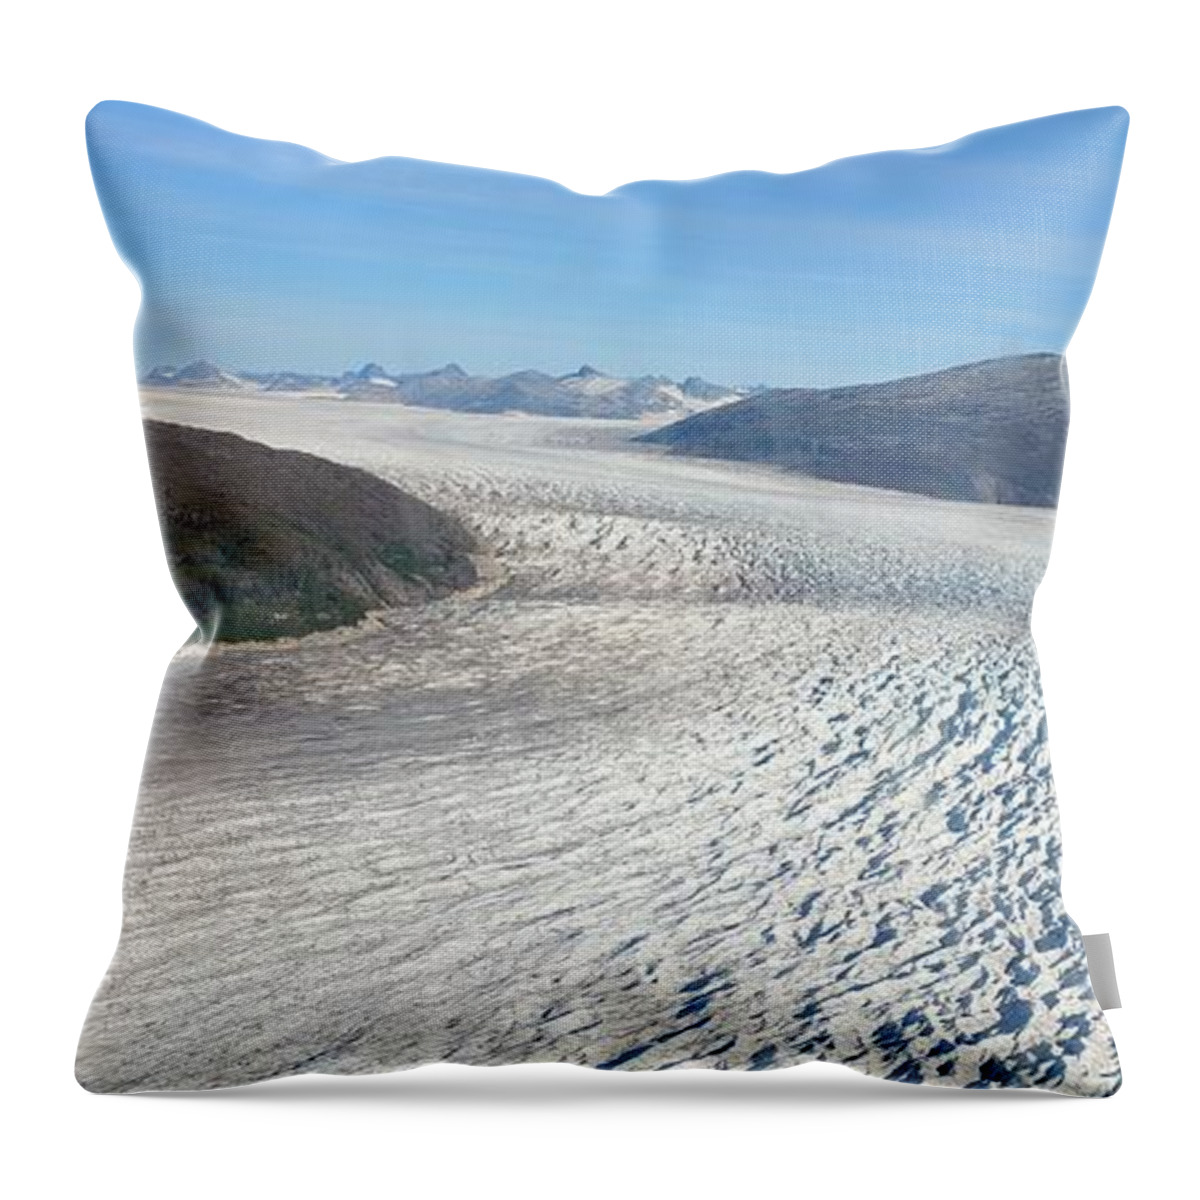 Alaska View Throw Pillow featuring the photograph Alaskan flight by Elena Pratt